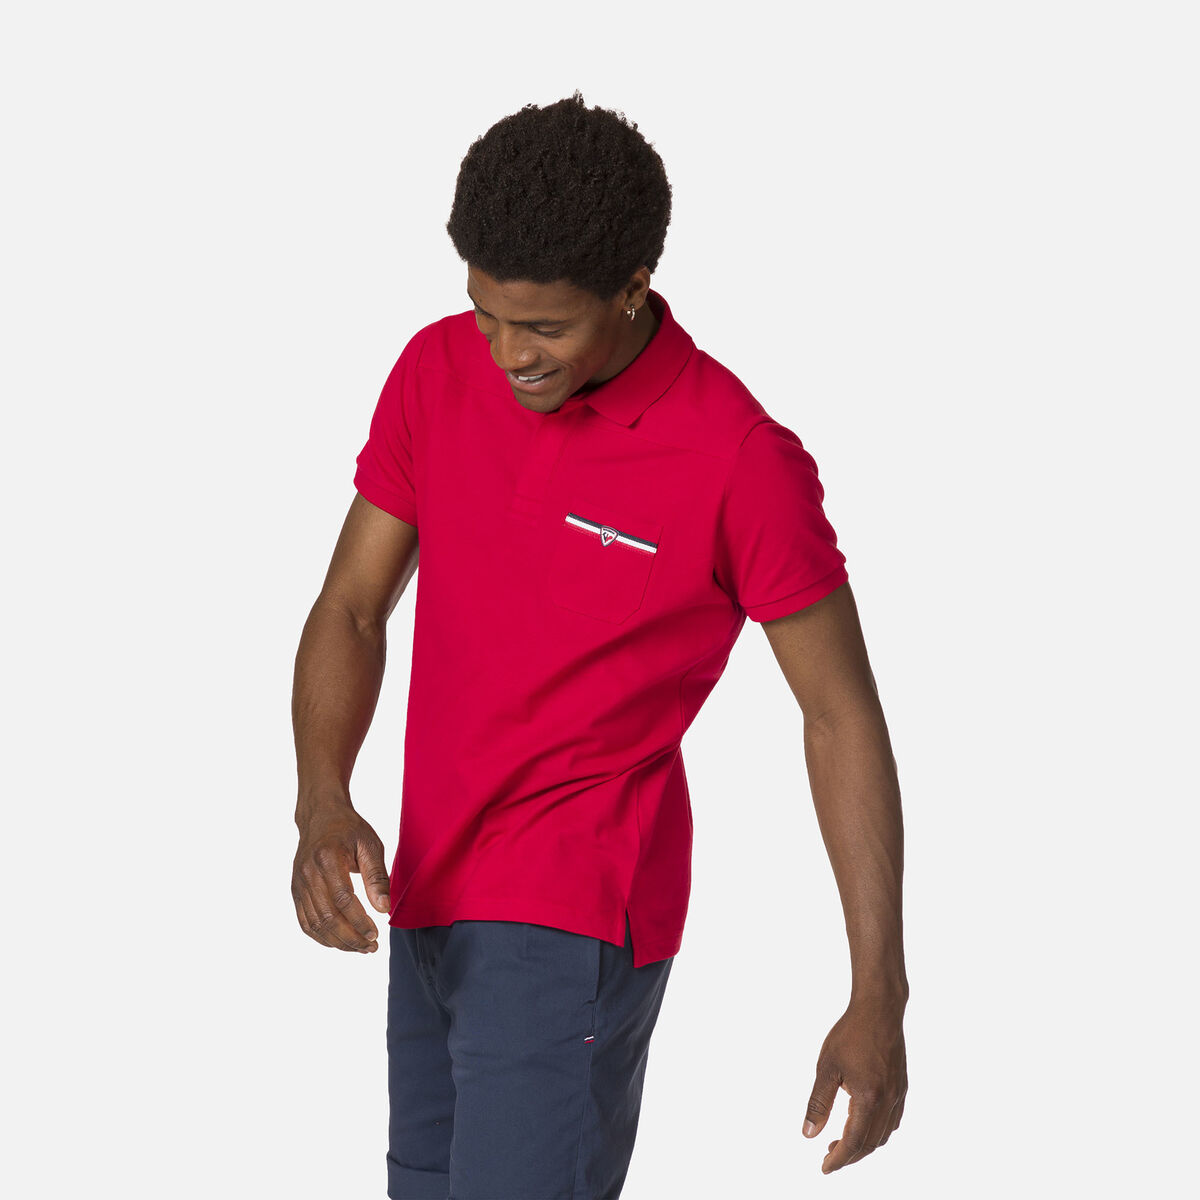 Men's pocket logo polo shirt